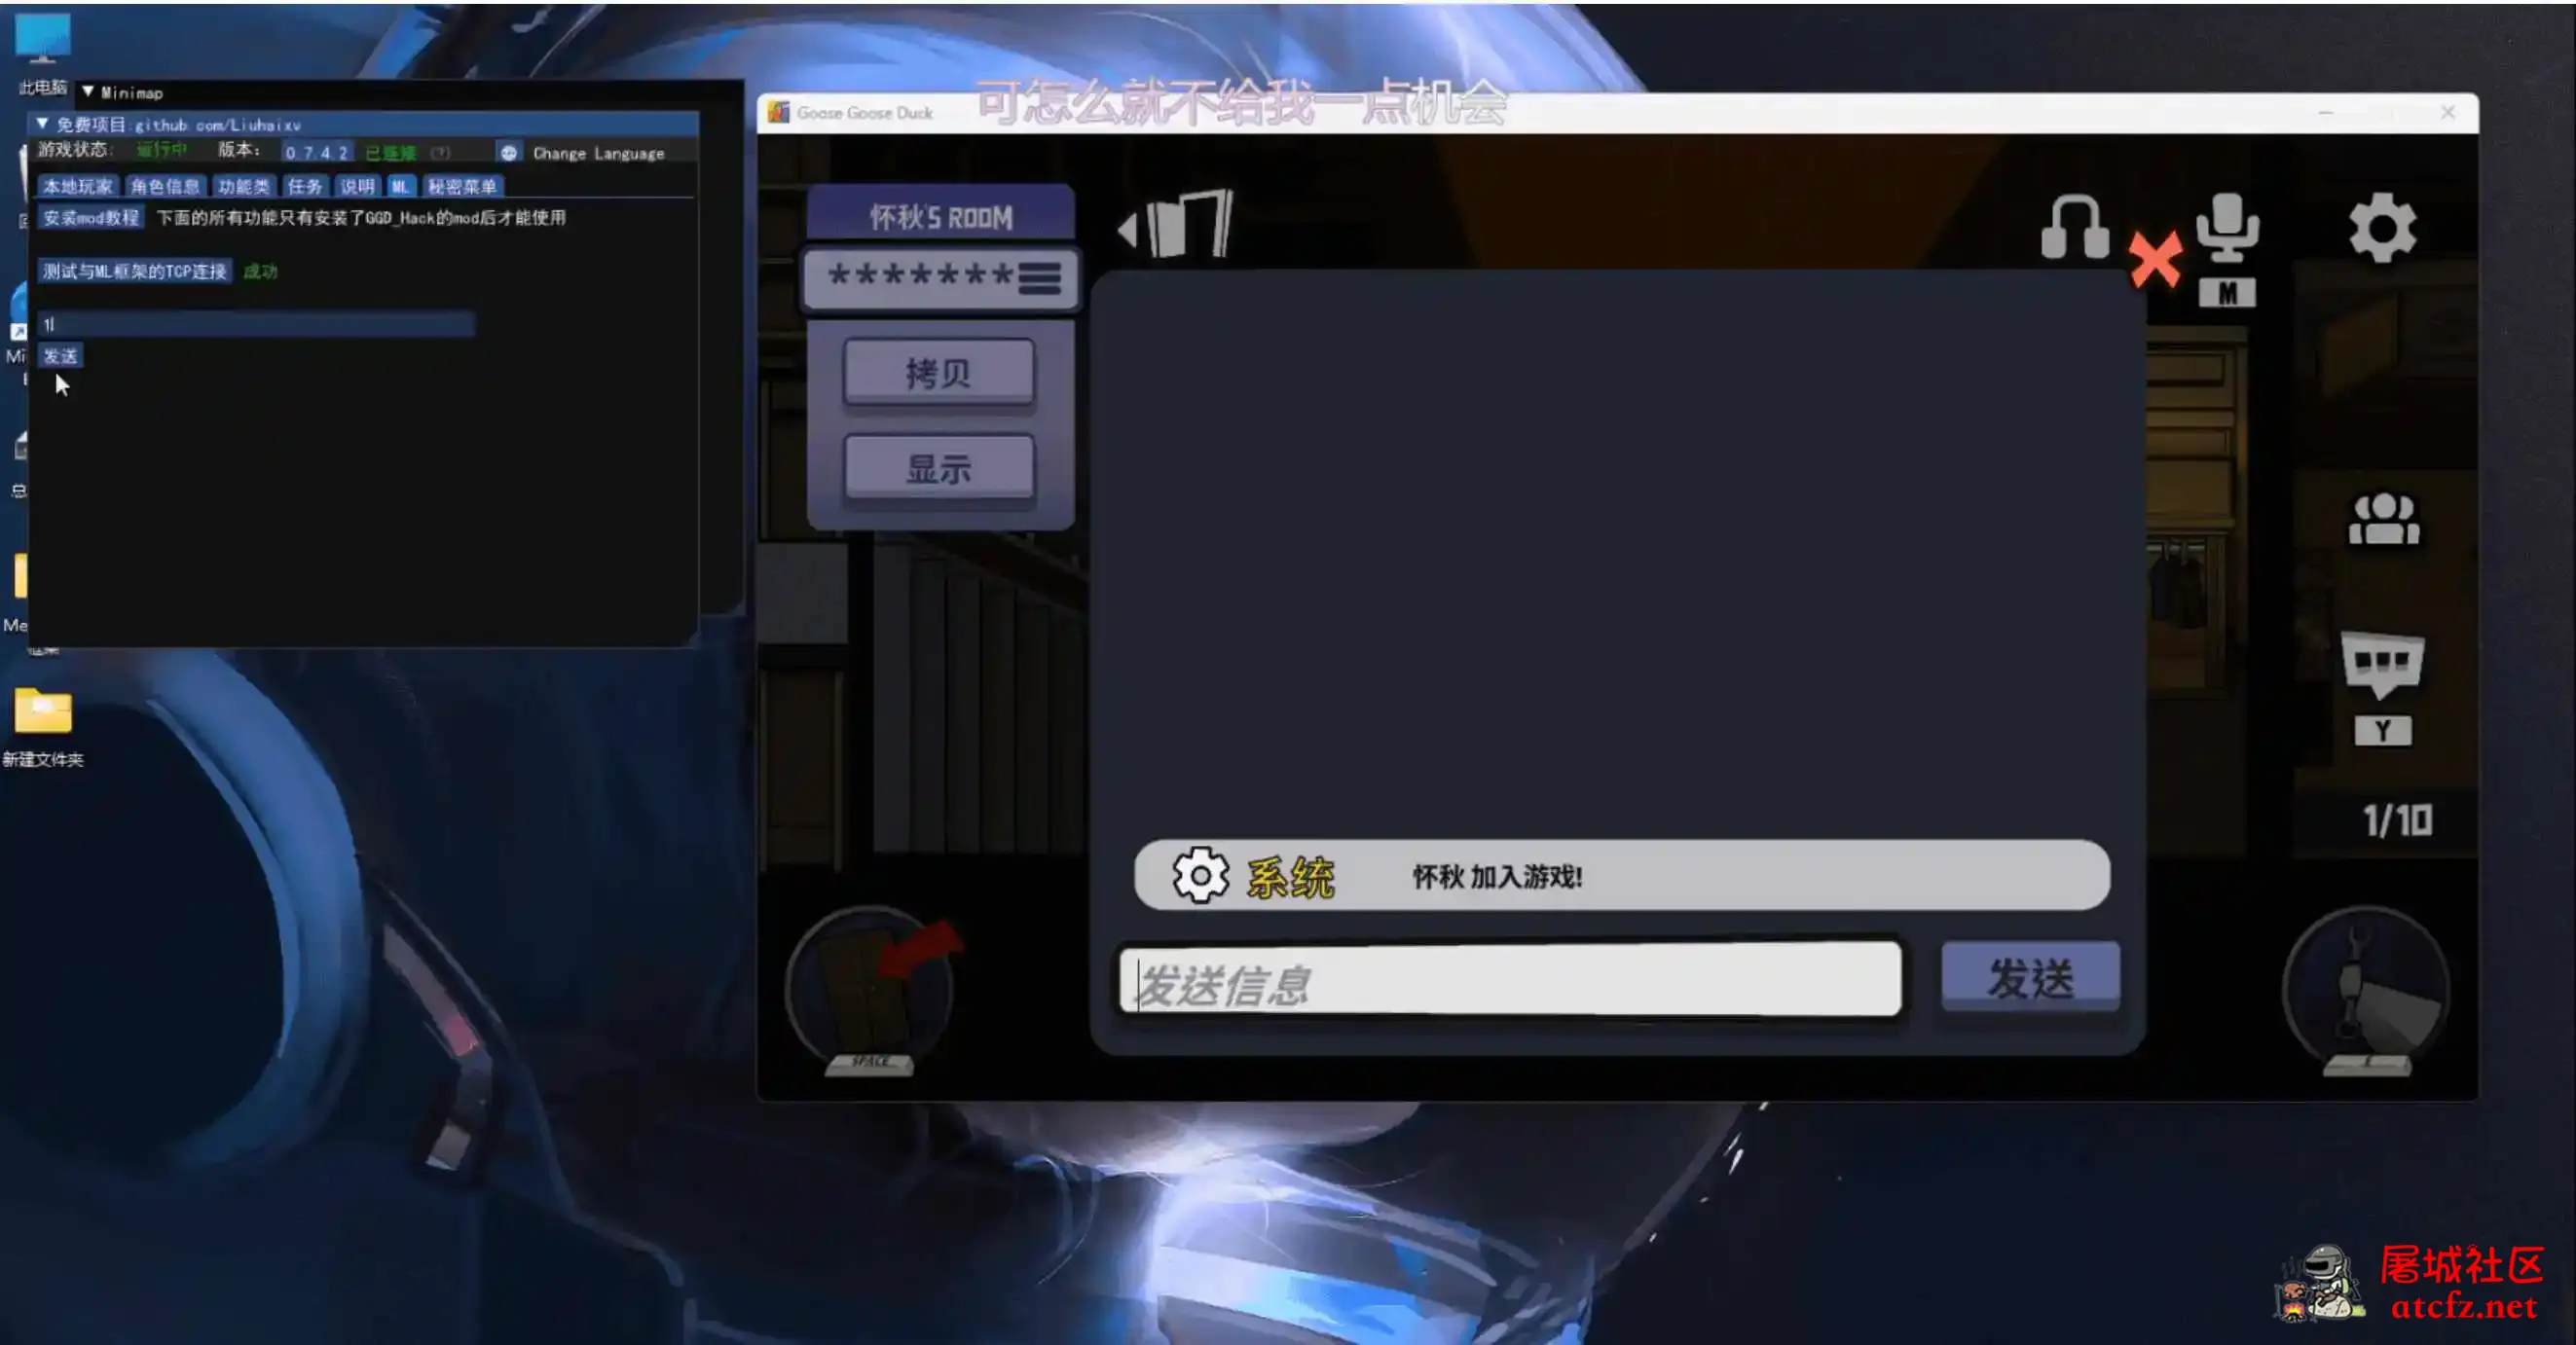 鹅鸭杀Minimp显玩家传送无冷却穿墙多功能辅助v1.5.1 屠城辅助网www.tcfz1.com446